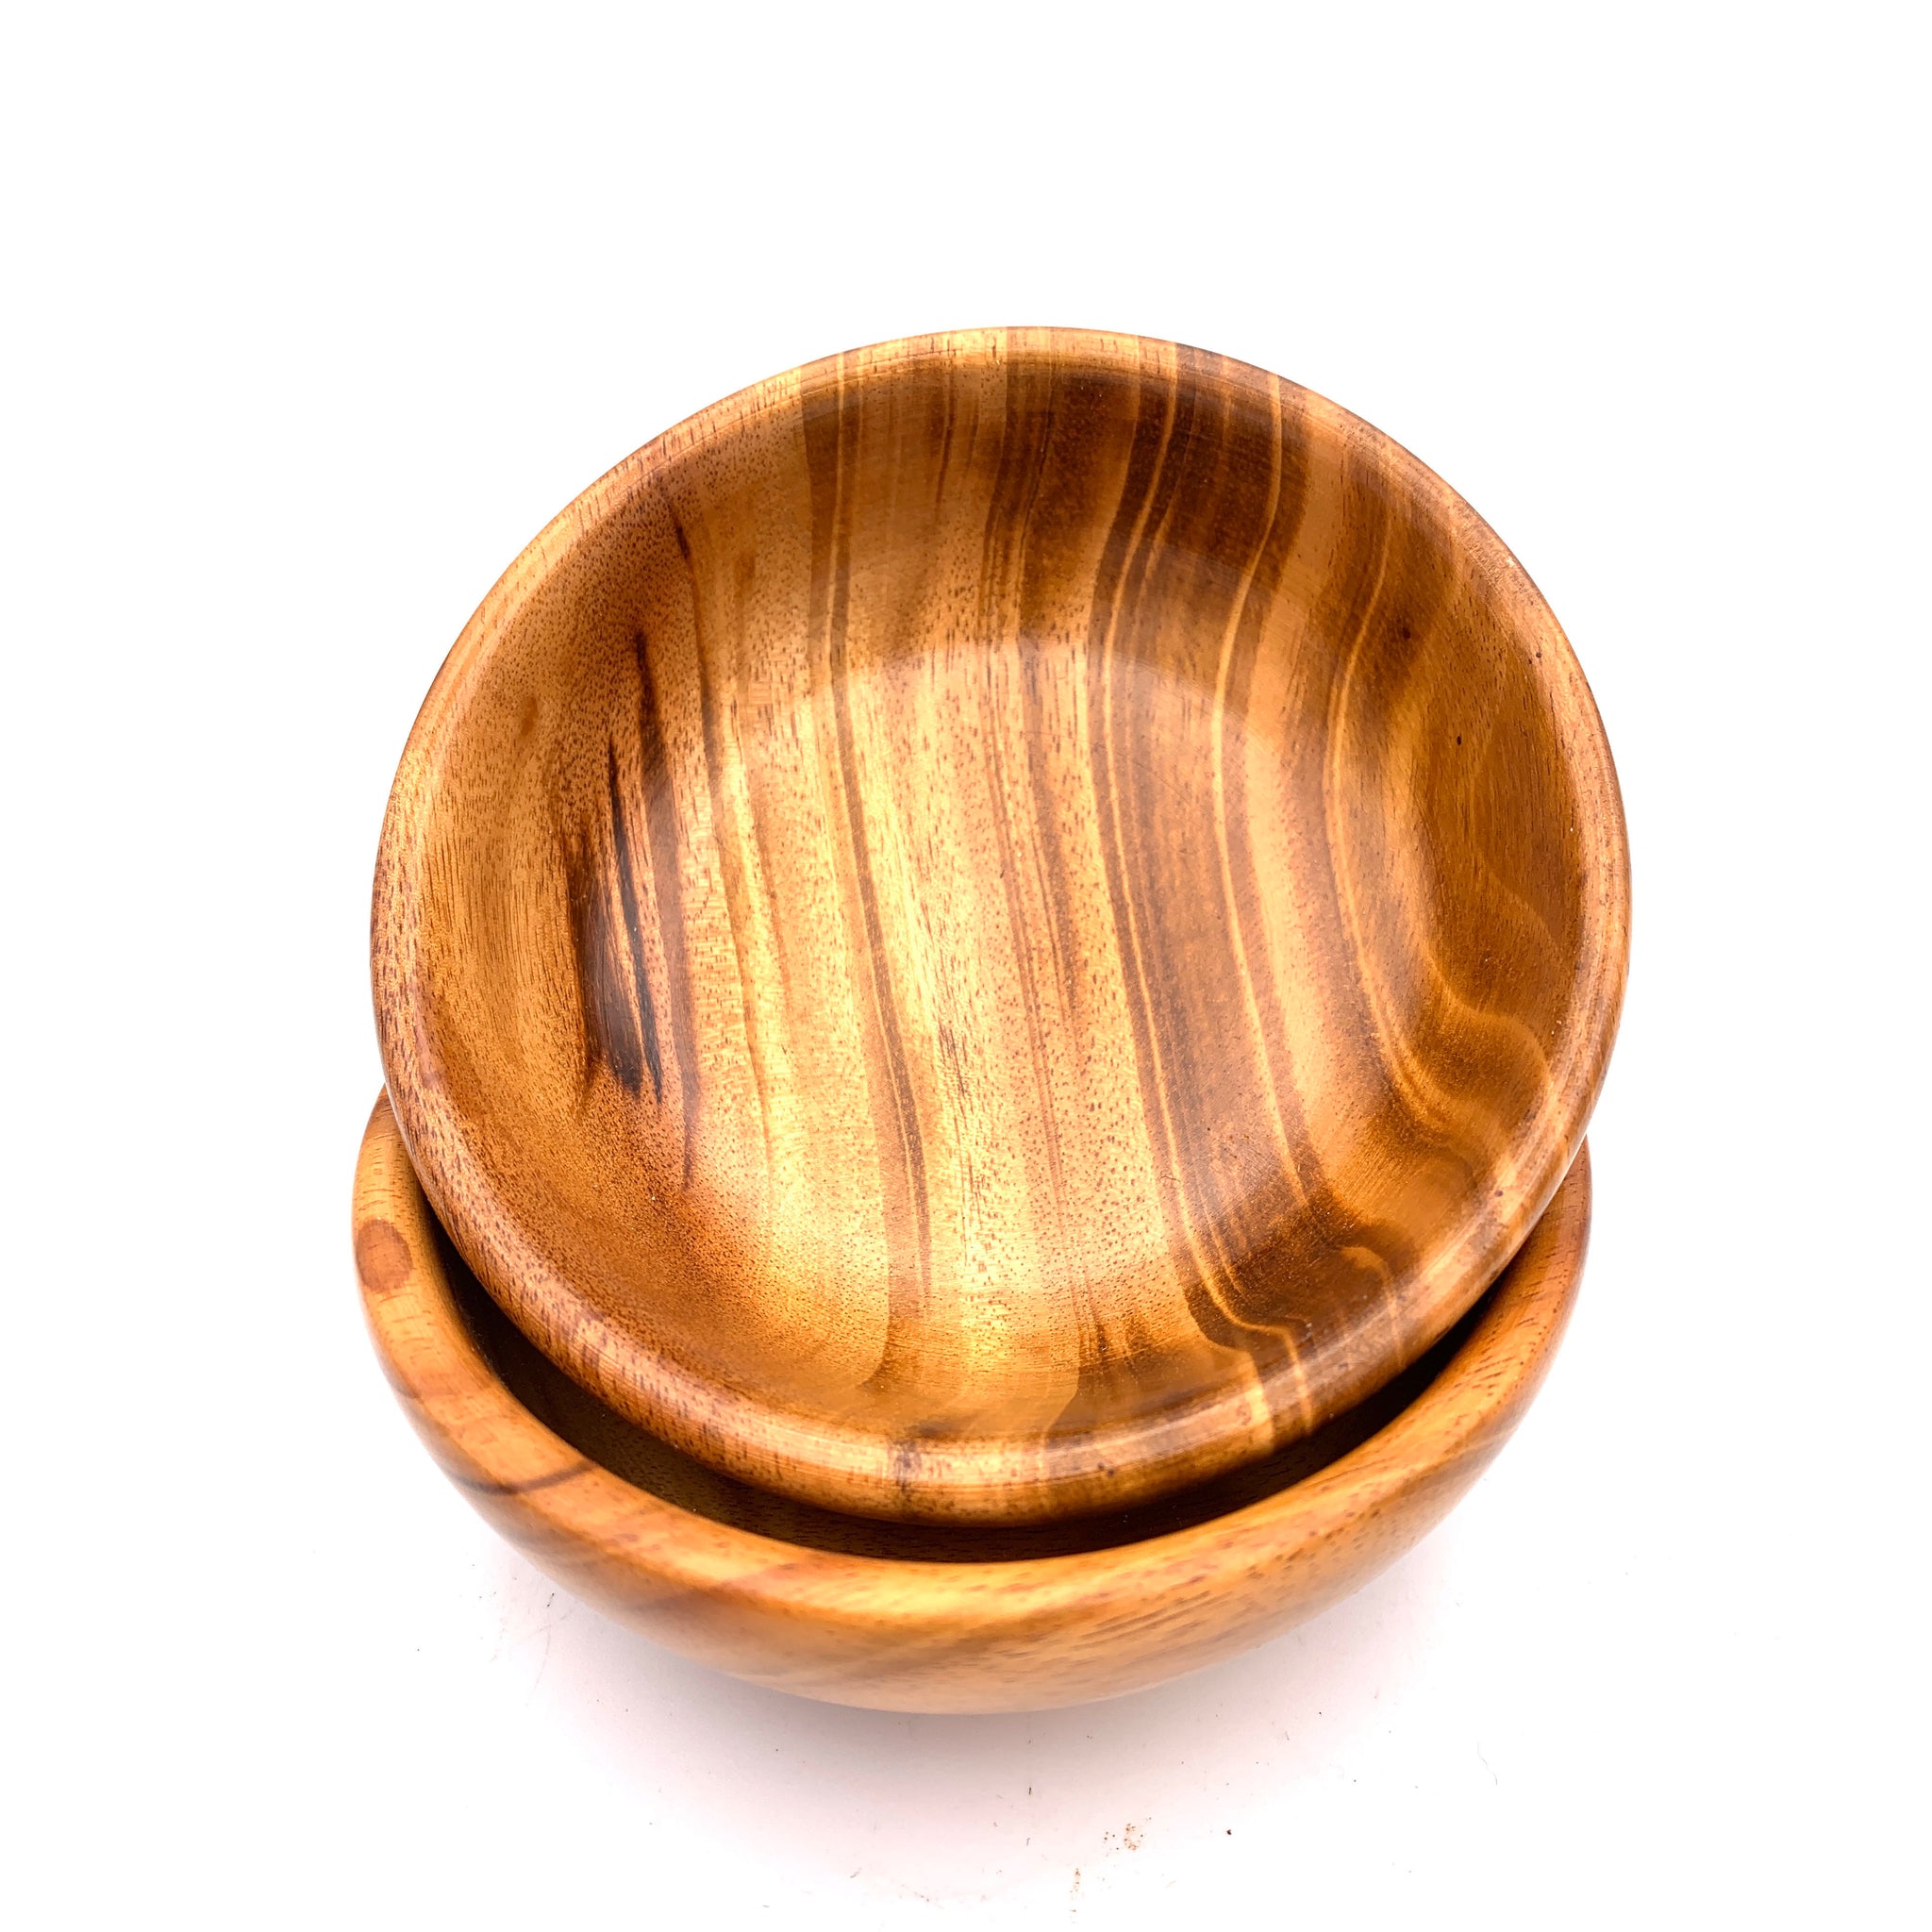 Tropical Hardwood Small Bowl